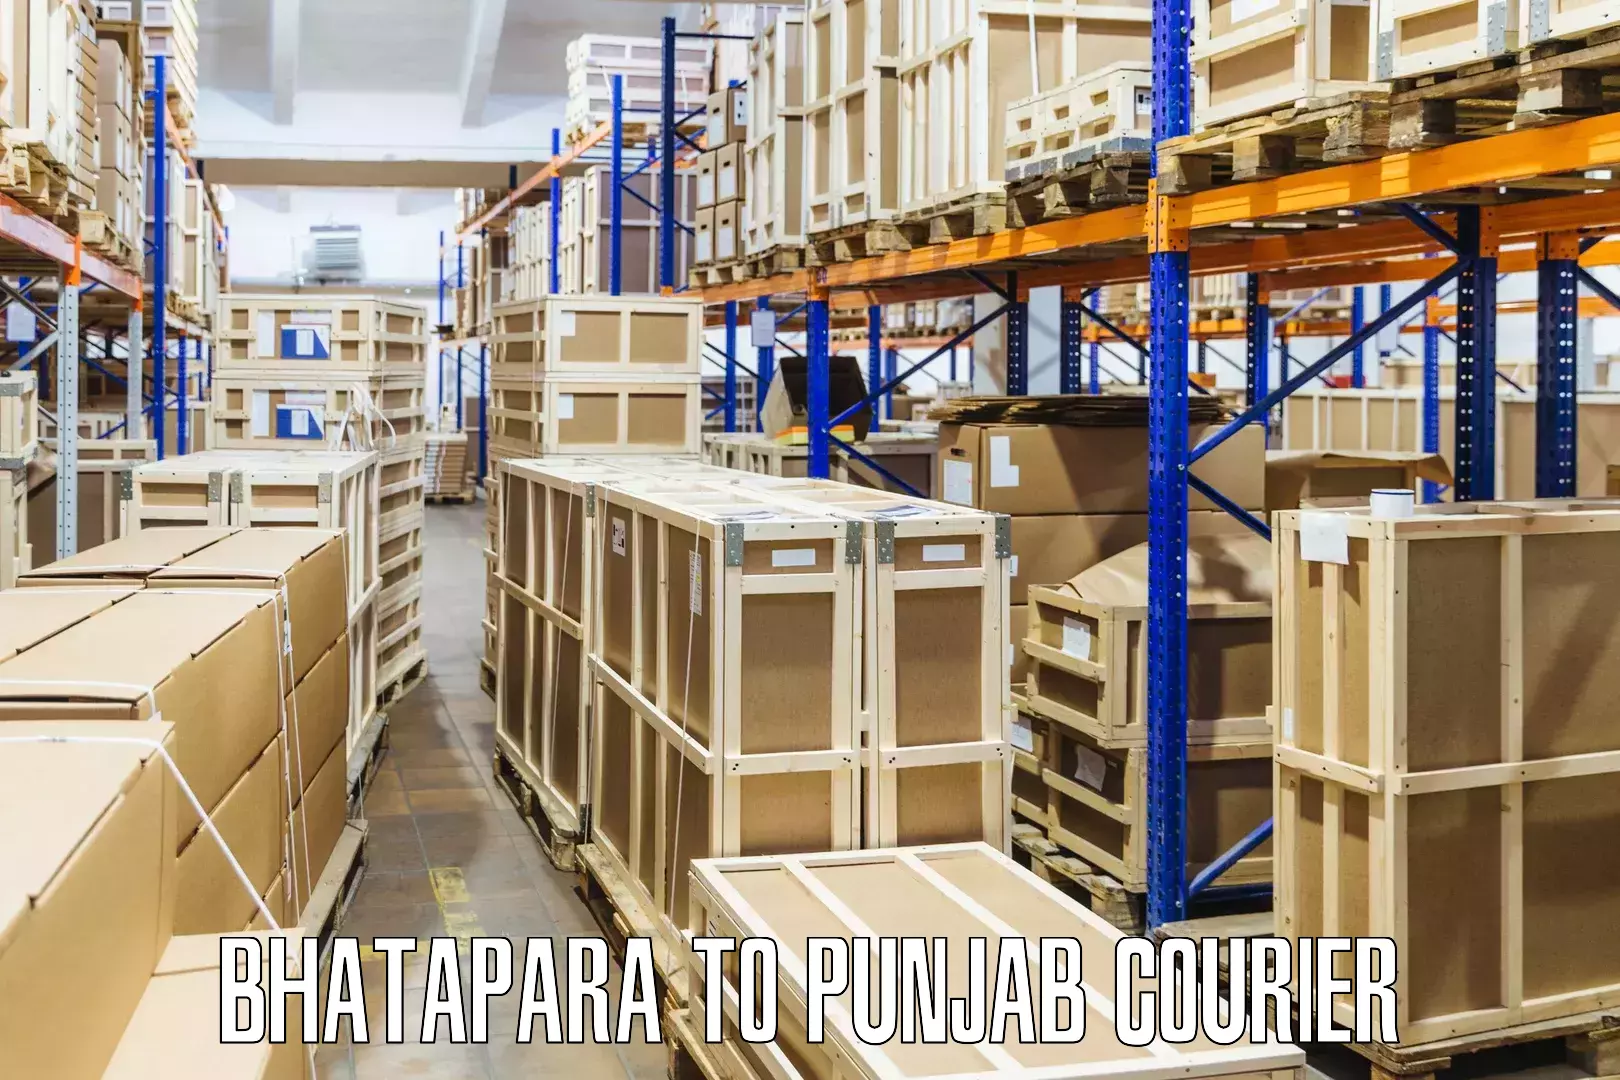 Shipping and handling Bhatapara to Mandi Gobindgarh